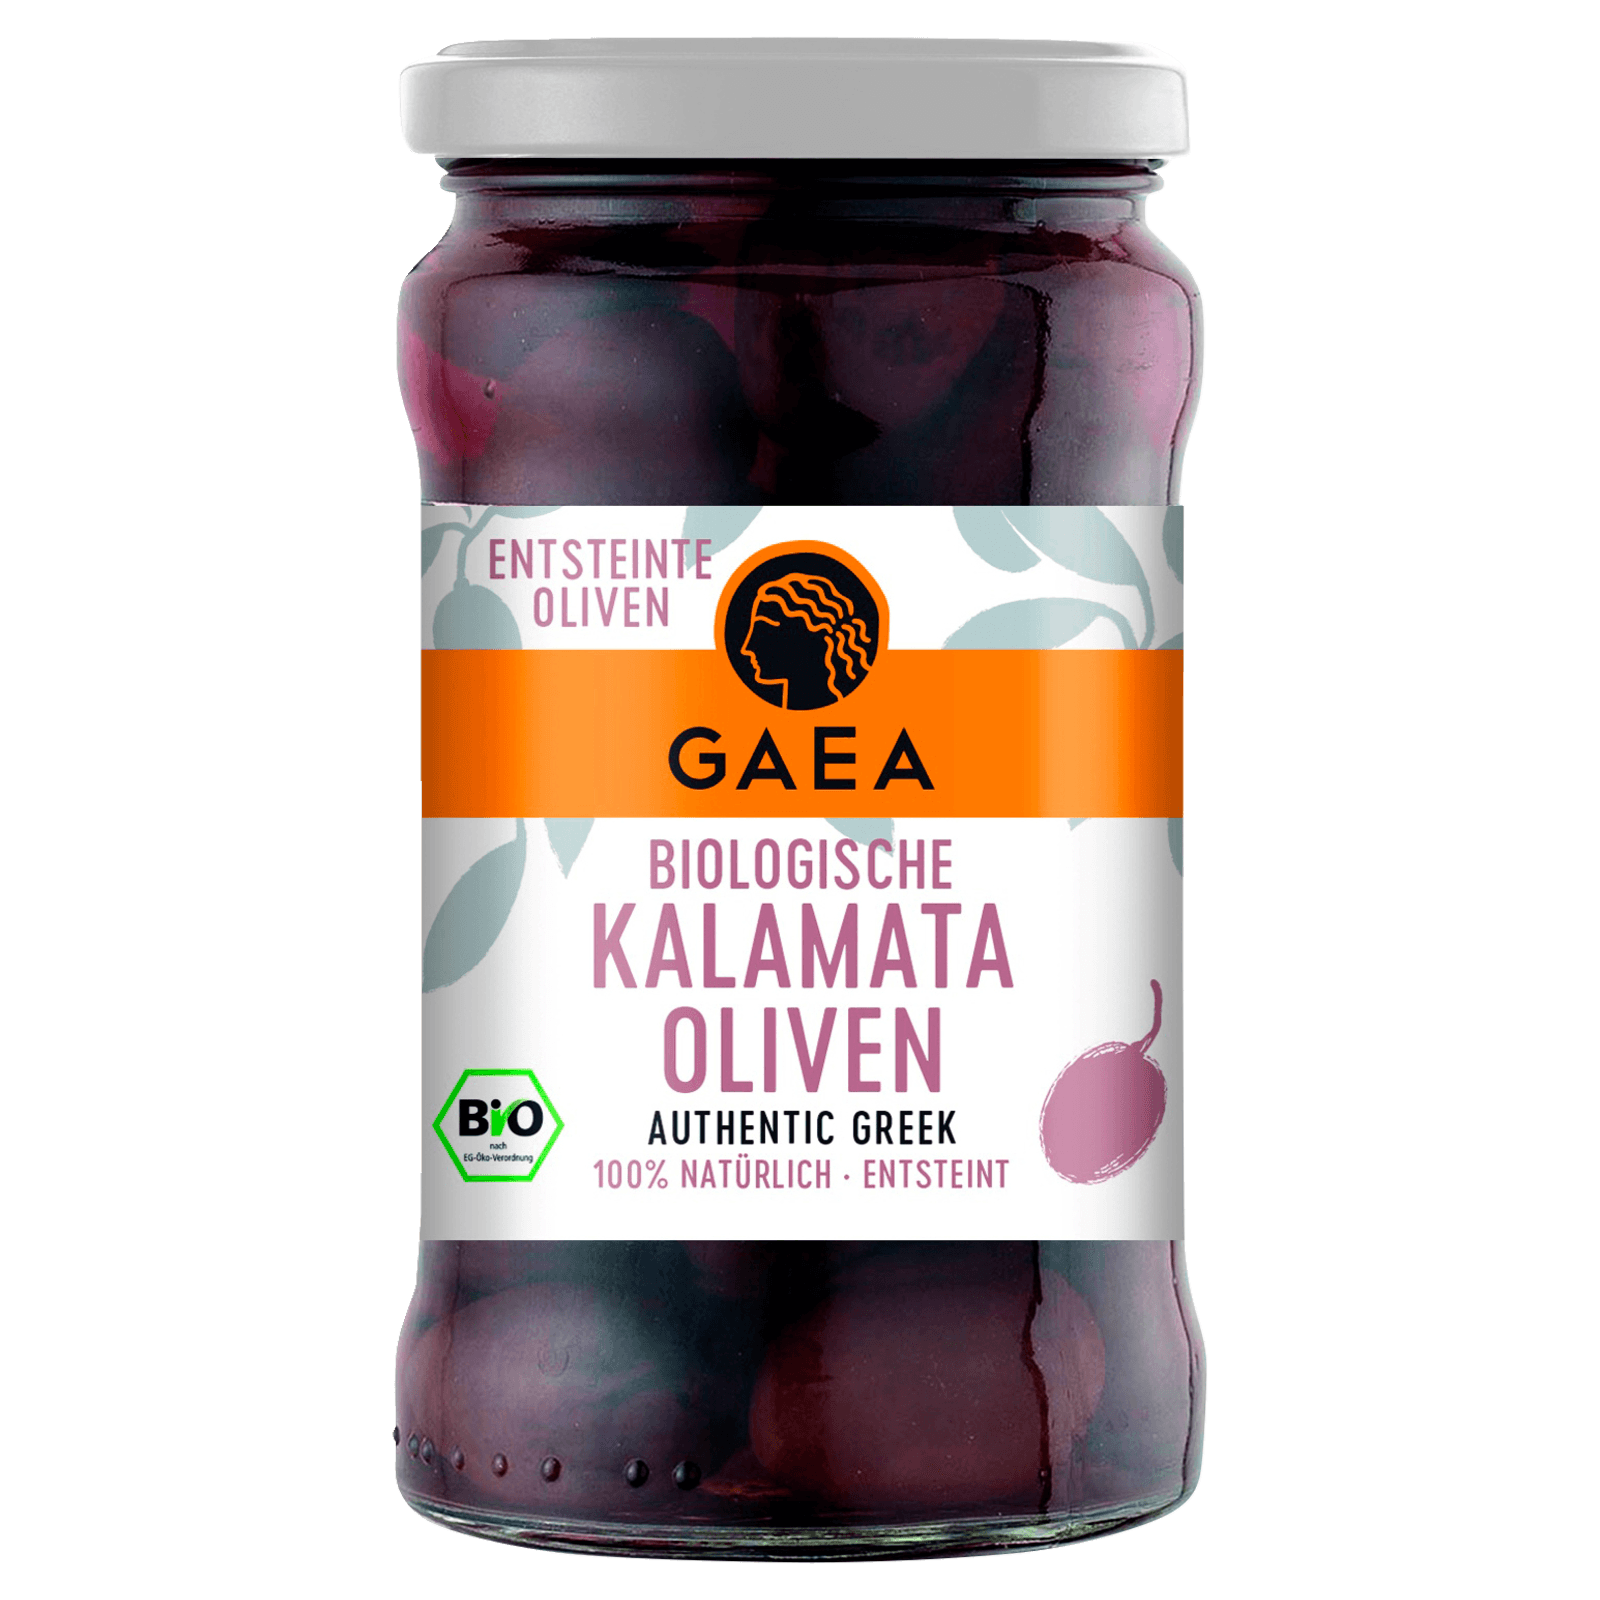 Gaea Bio Biologische entsteinte Kalamata Oliven 290g